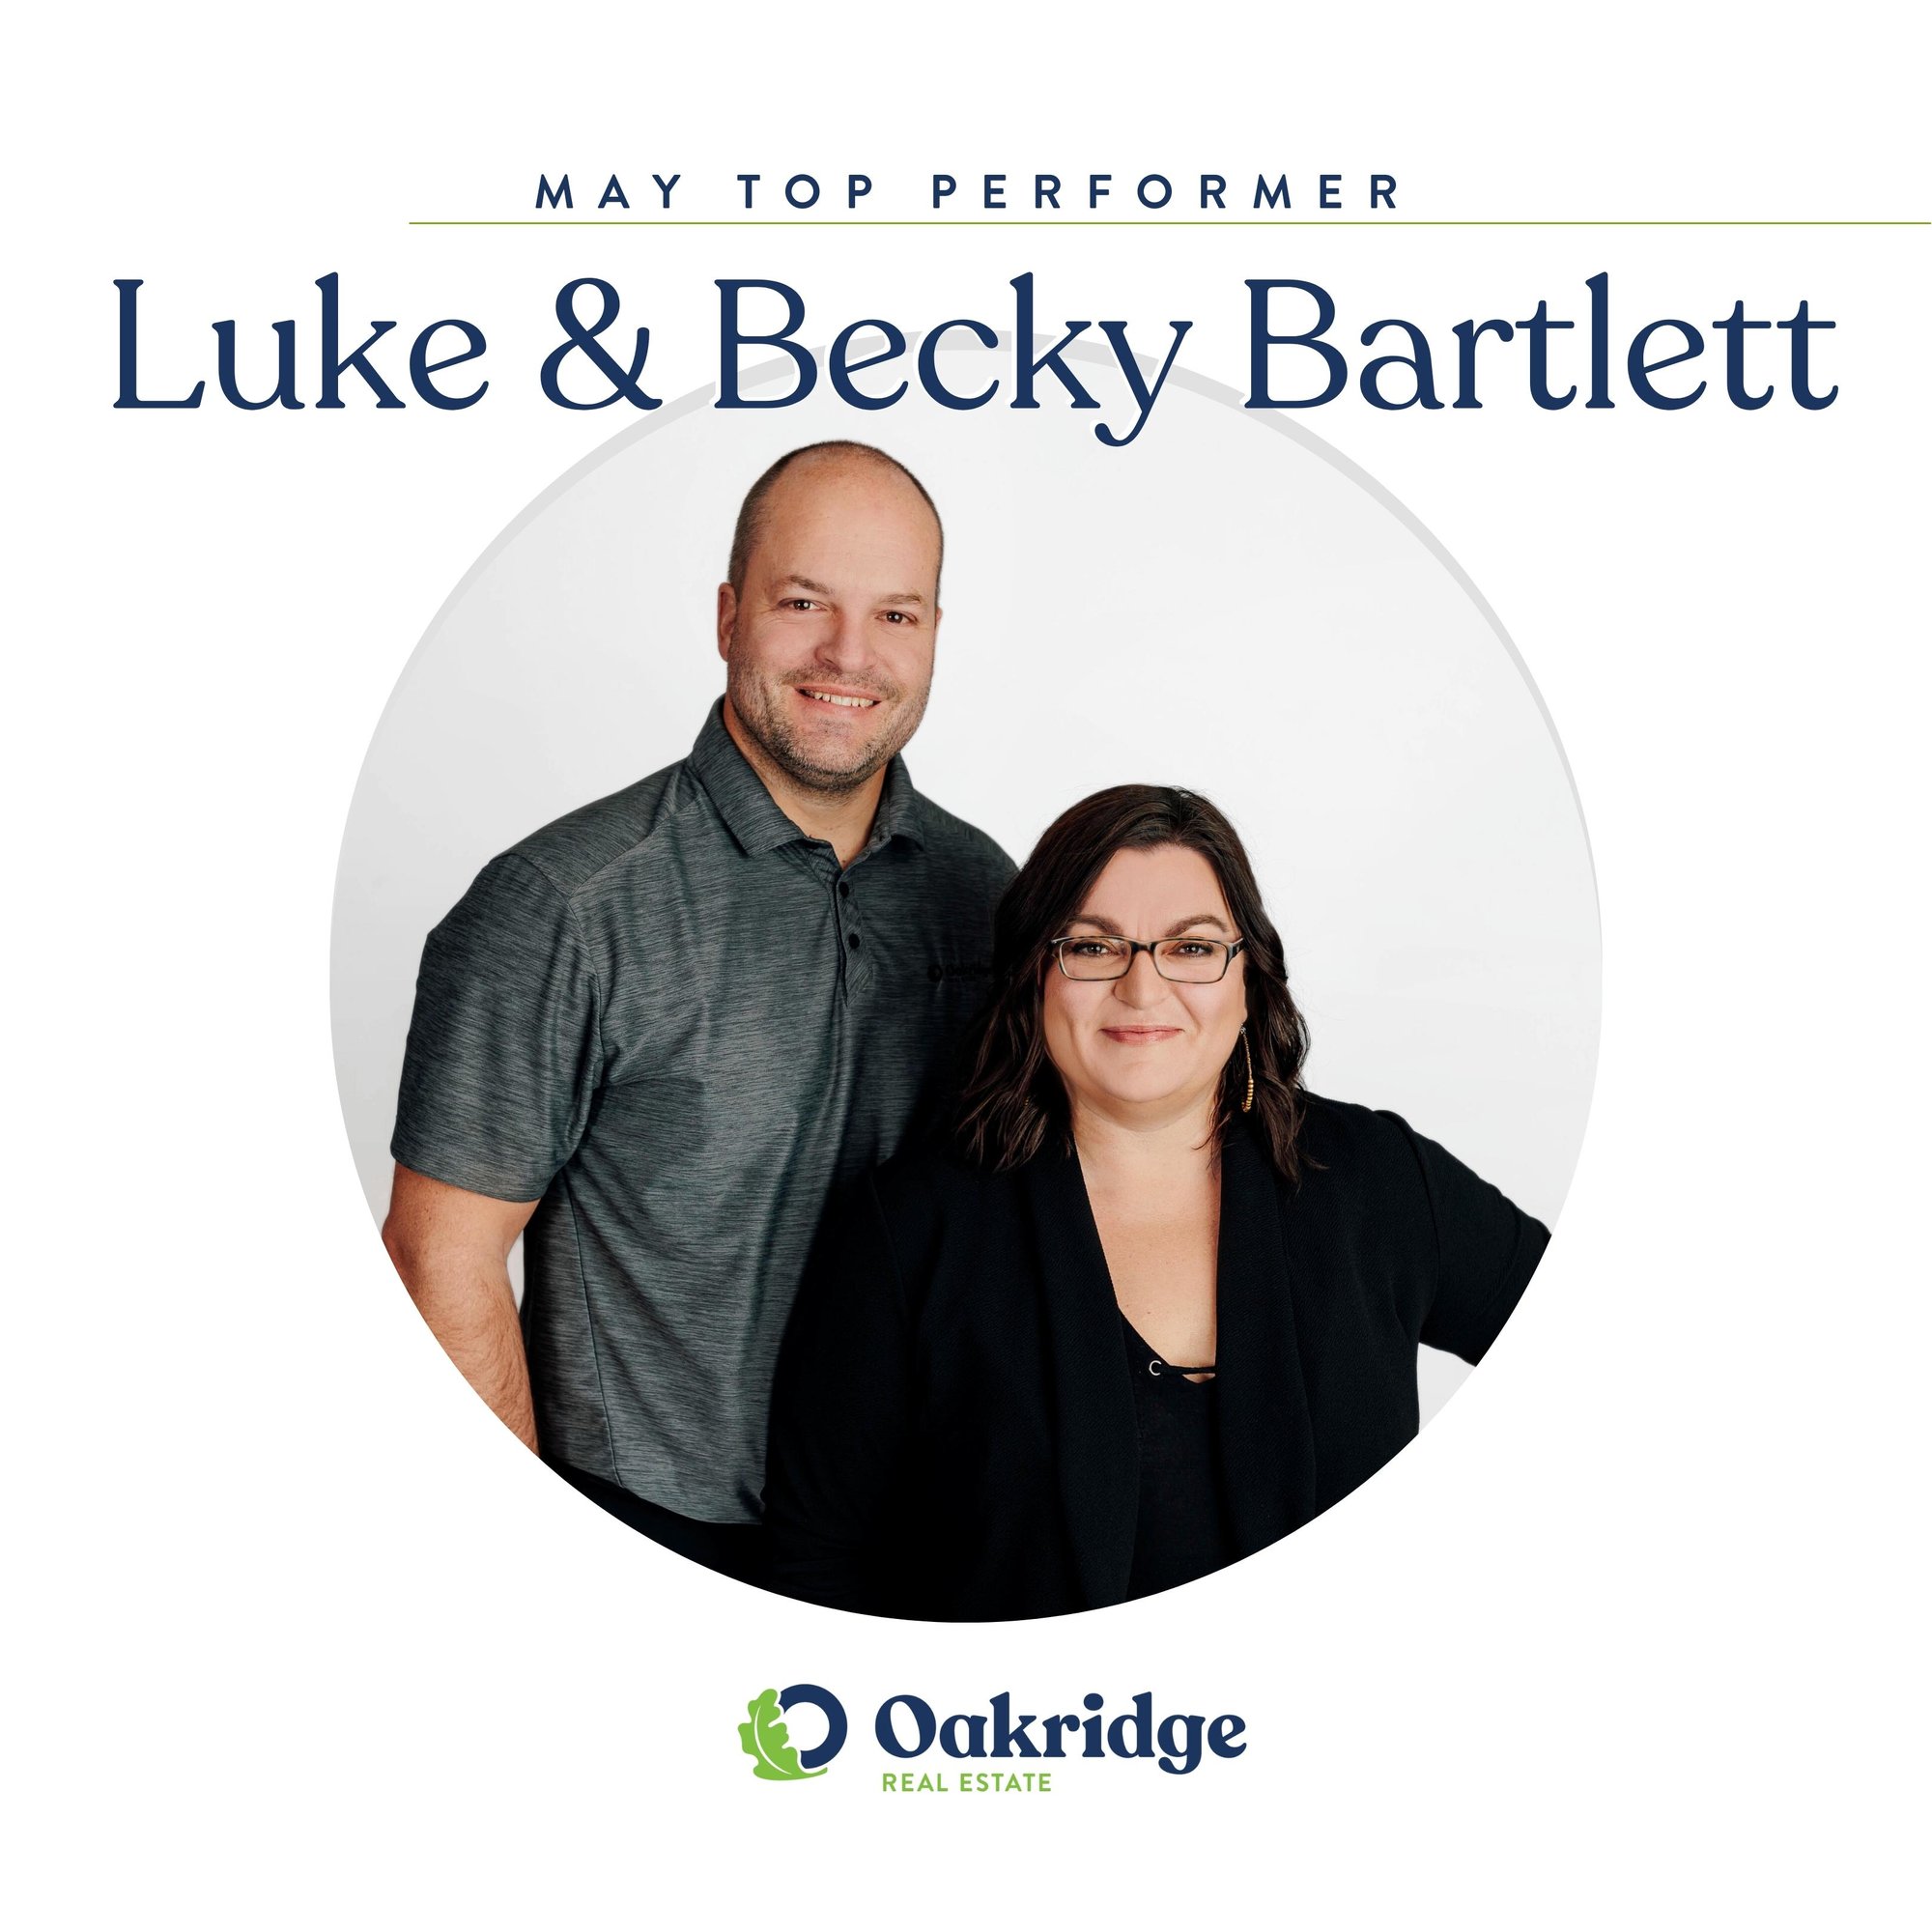 Luke & Becky Bartlett May Top Performer Oakridge Real Estate